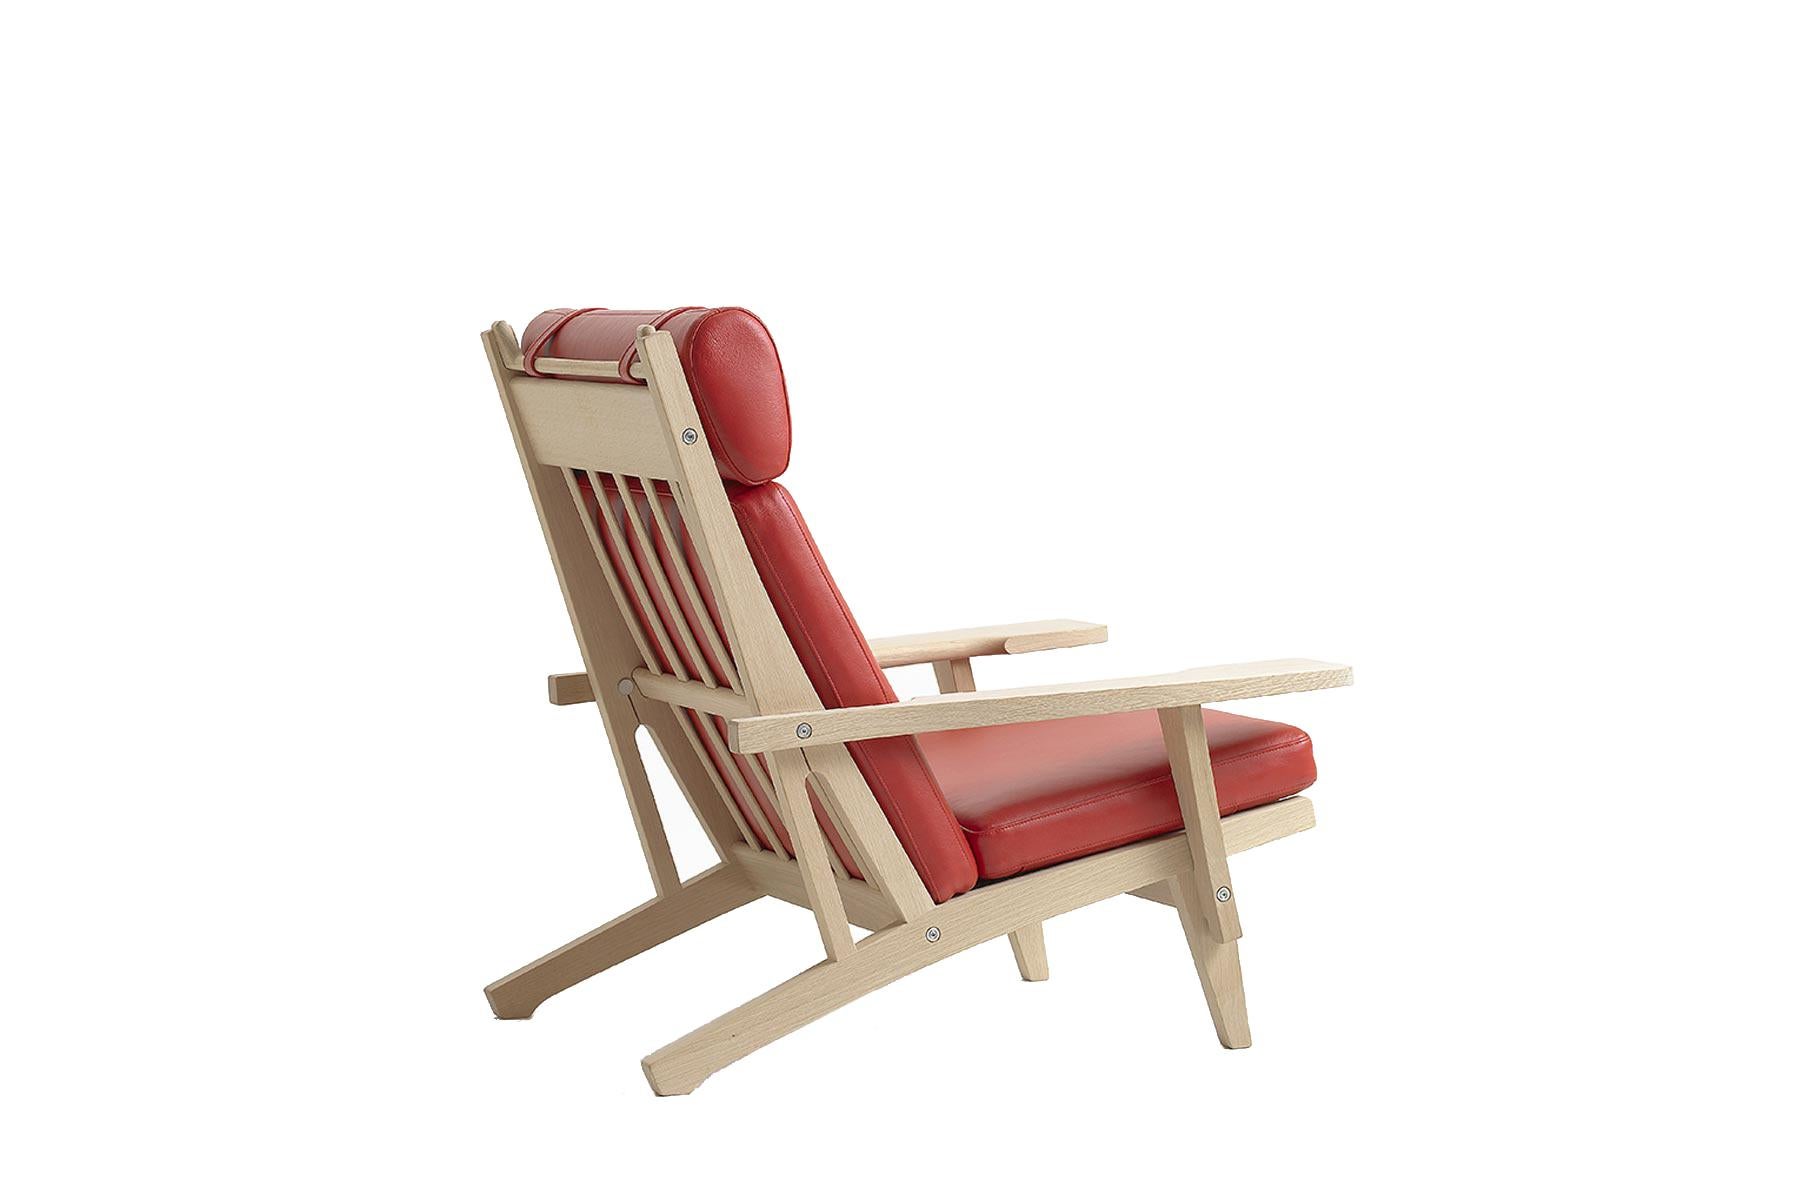 Conçue en 1969 par Hans Wegner, la chaise longue 375A allie des lignes épurées à un savoir-faire remarquable. La chaise est fabriquée à la main dans l'usine de GETAMA à Gedsted, au Danemark, par des ébénistes qualifiés qui utilisent des techniques